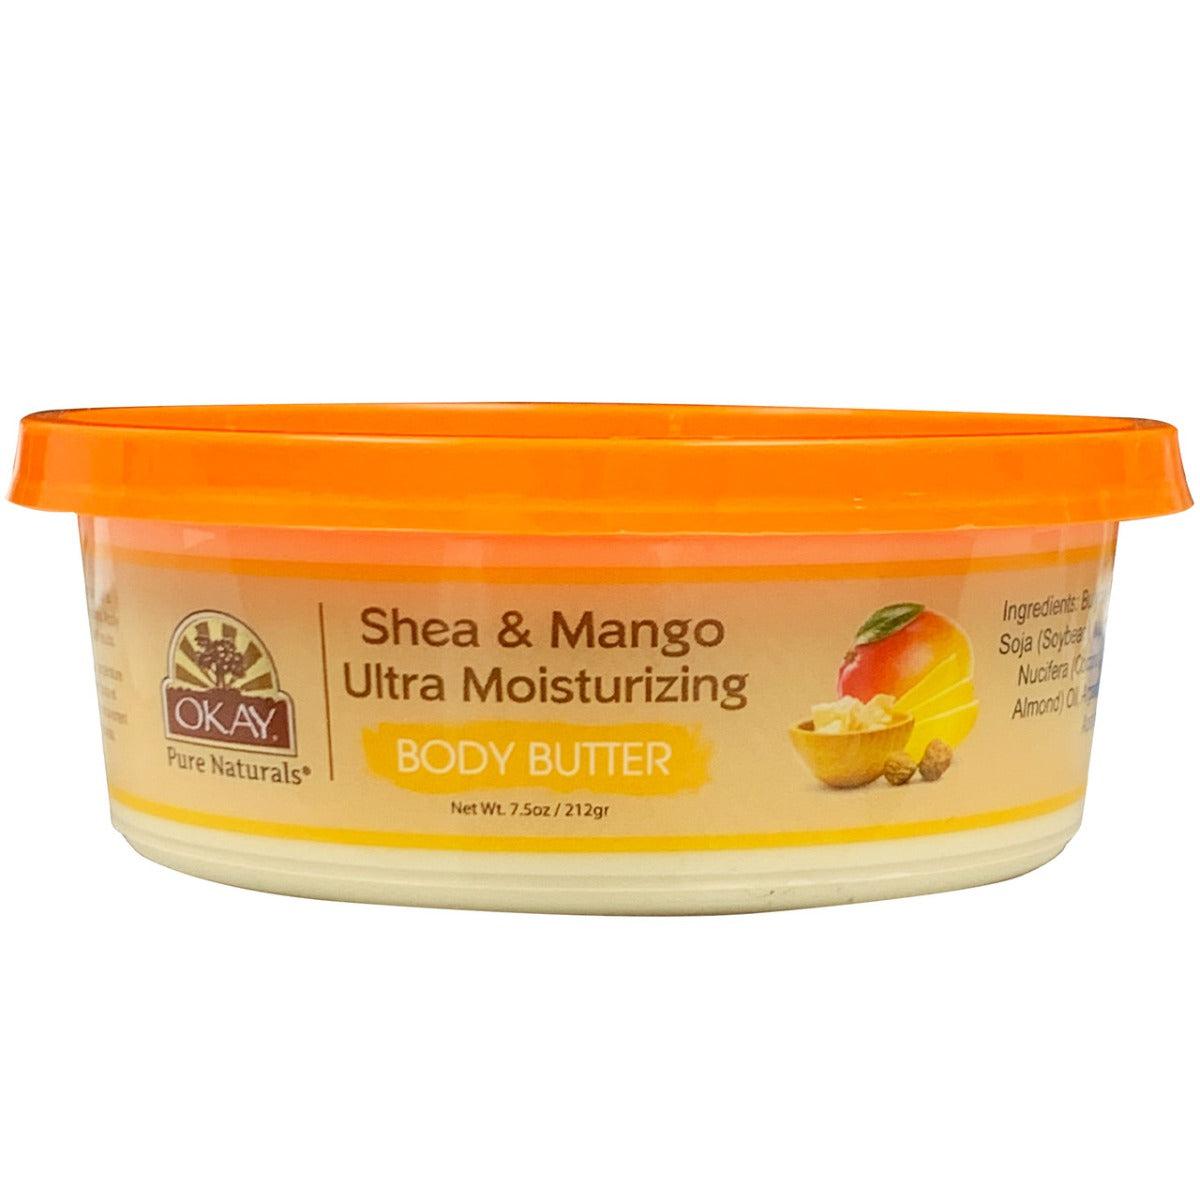 Okay Pure Naturals Shea & Mango Body Butter 212g